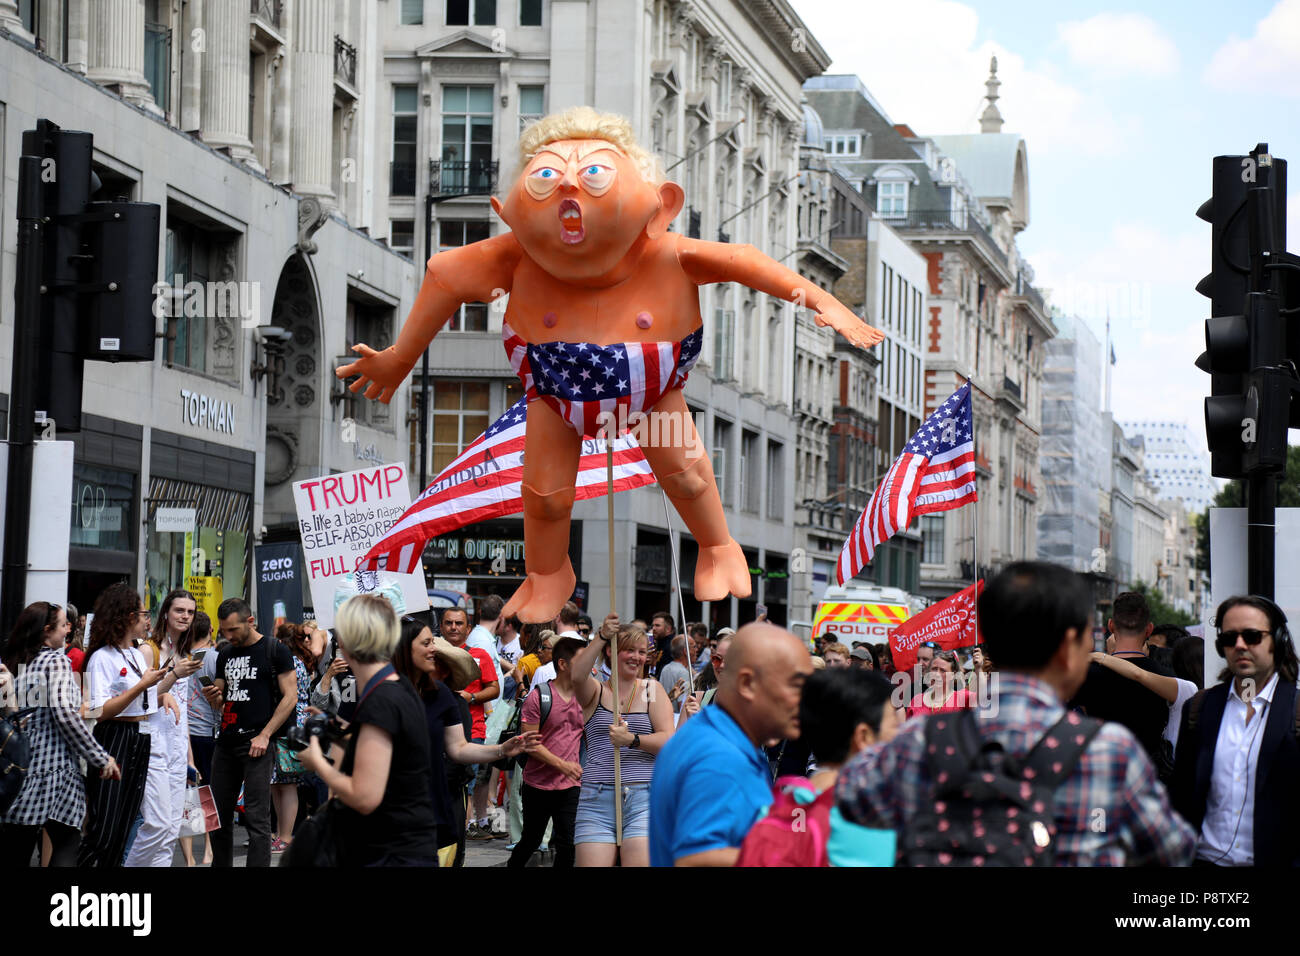 Londres, Reino Unido - 13 de julio de 2018: una efigie del presidente estadounidense Donald Trump es ayudar por manifestantes involucrados en un anti-Trump de marzo en el centro de Londres, durante su visita al Reino Unido. Crédito: Dominic Dudley/Alamy Live News Foto de stock